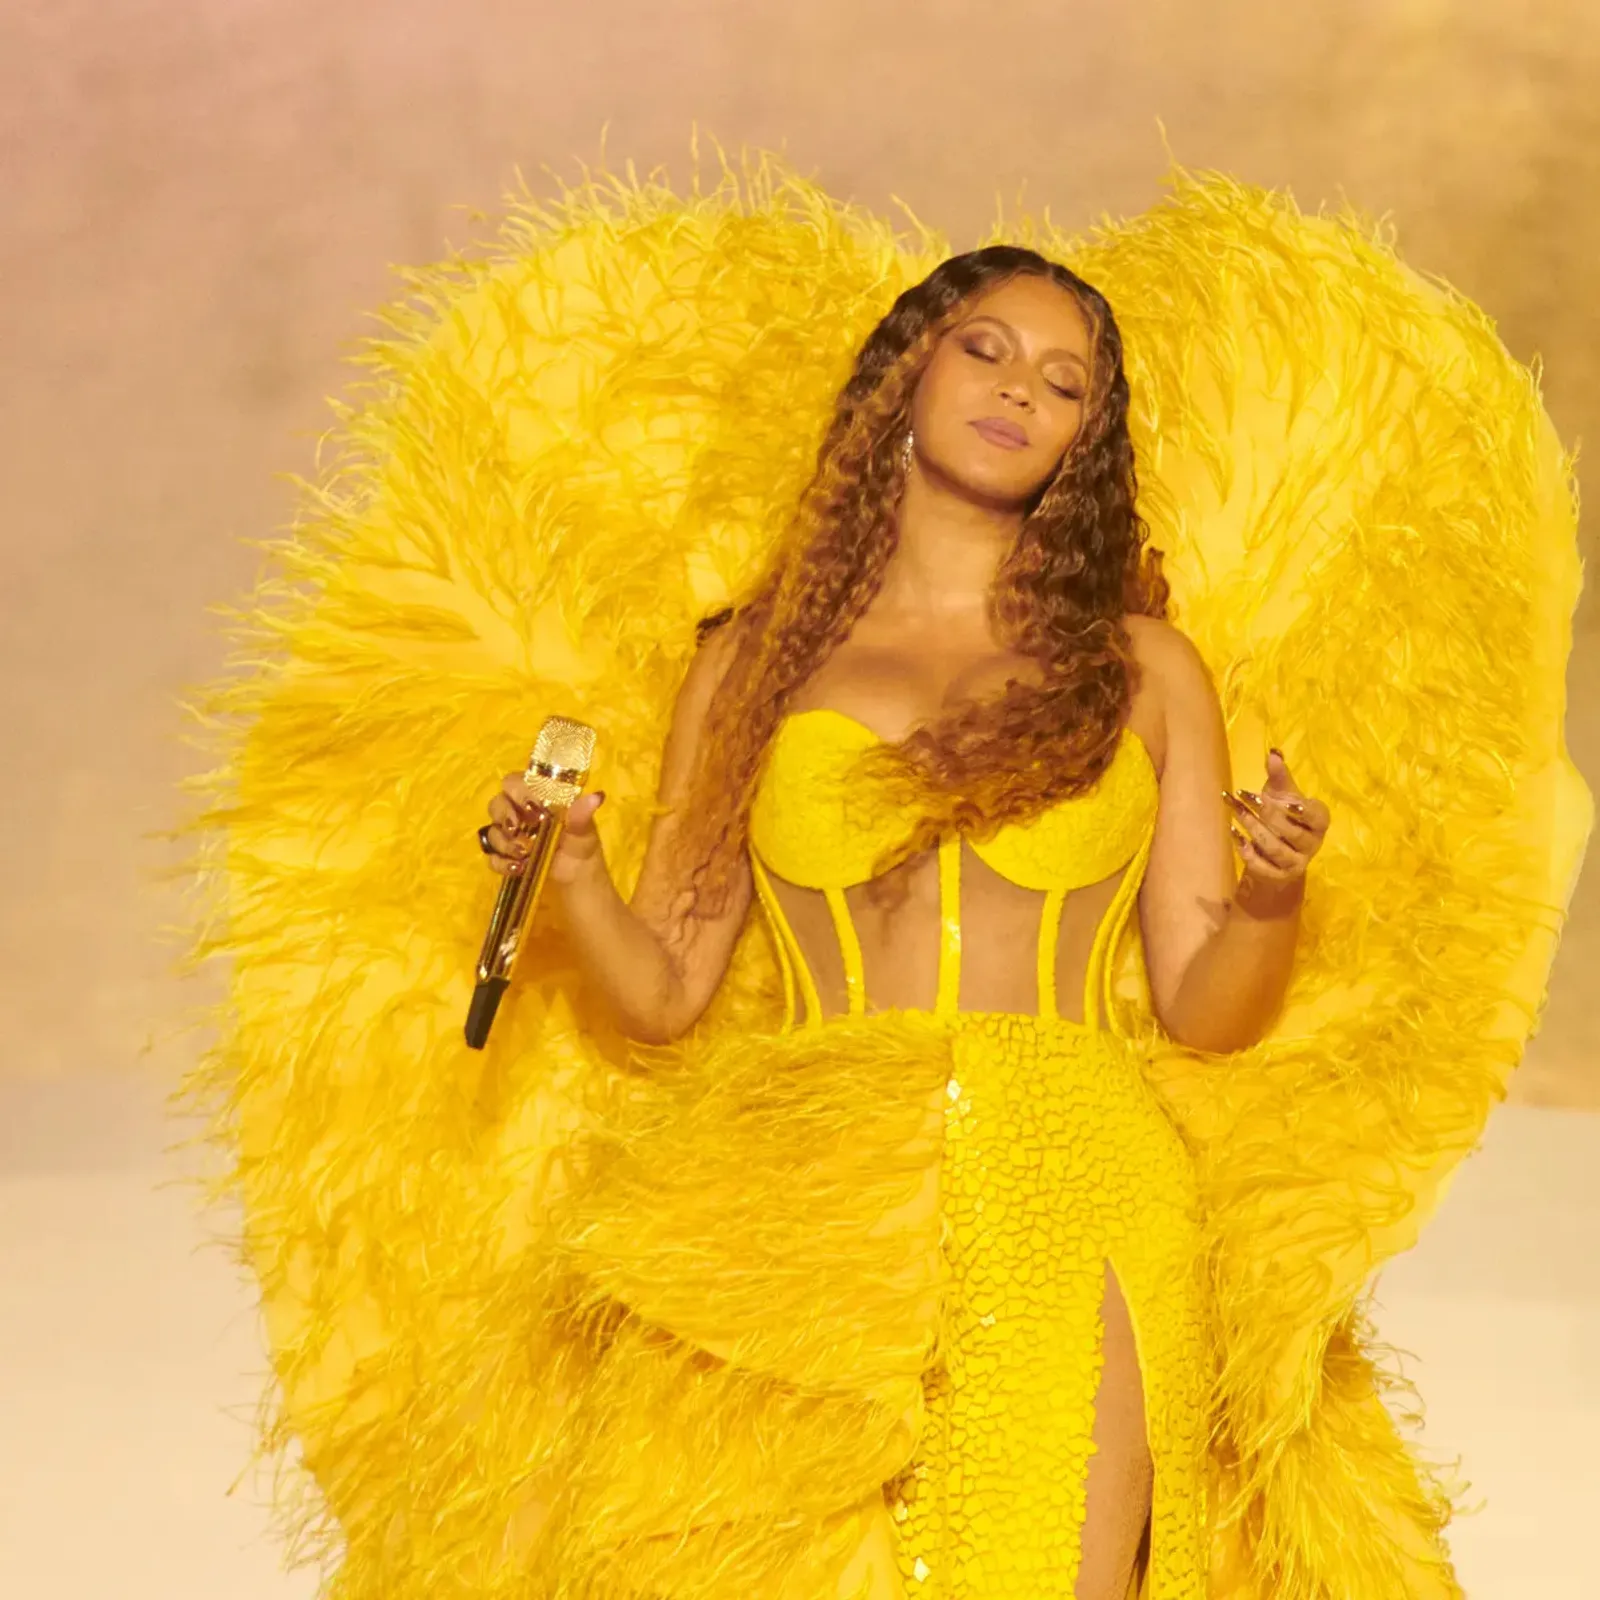 Fakta Menarik dari Kostum Panggung Beyoncé di Konser Dubai